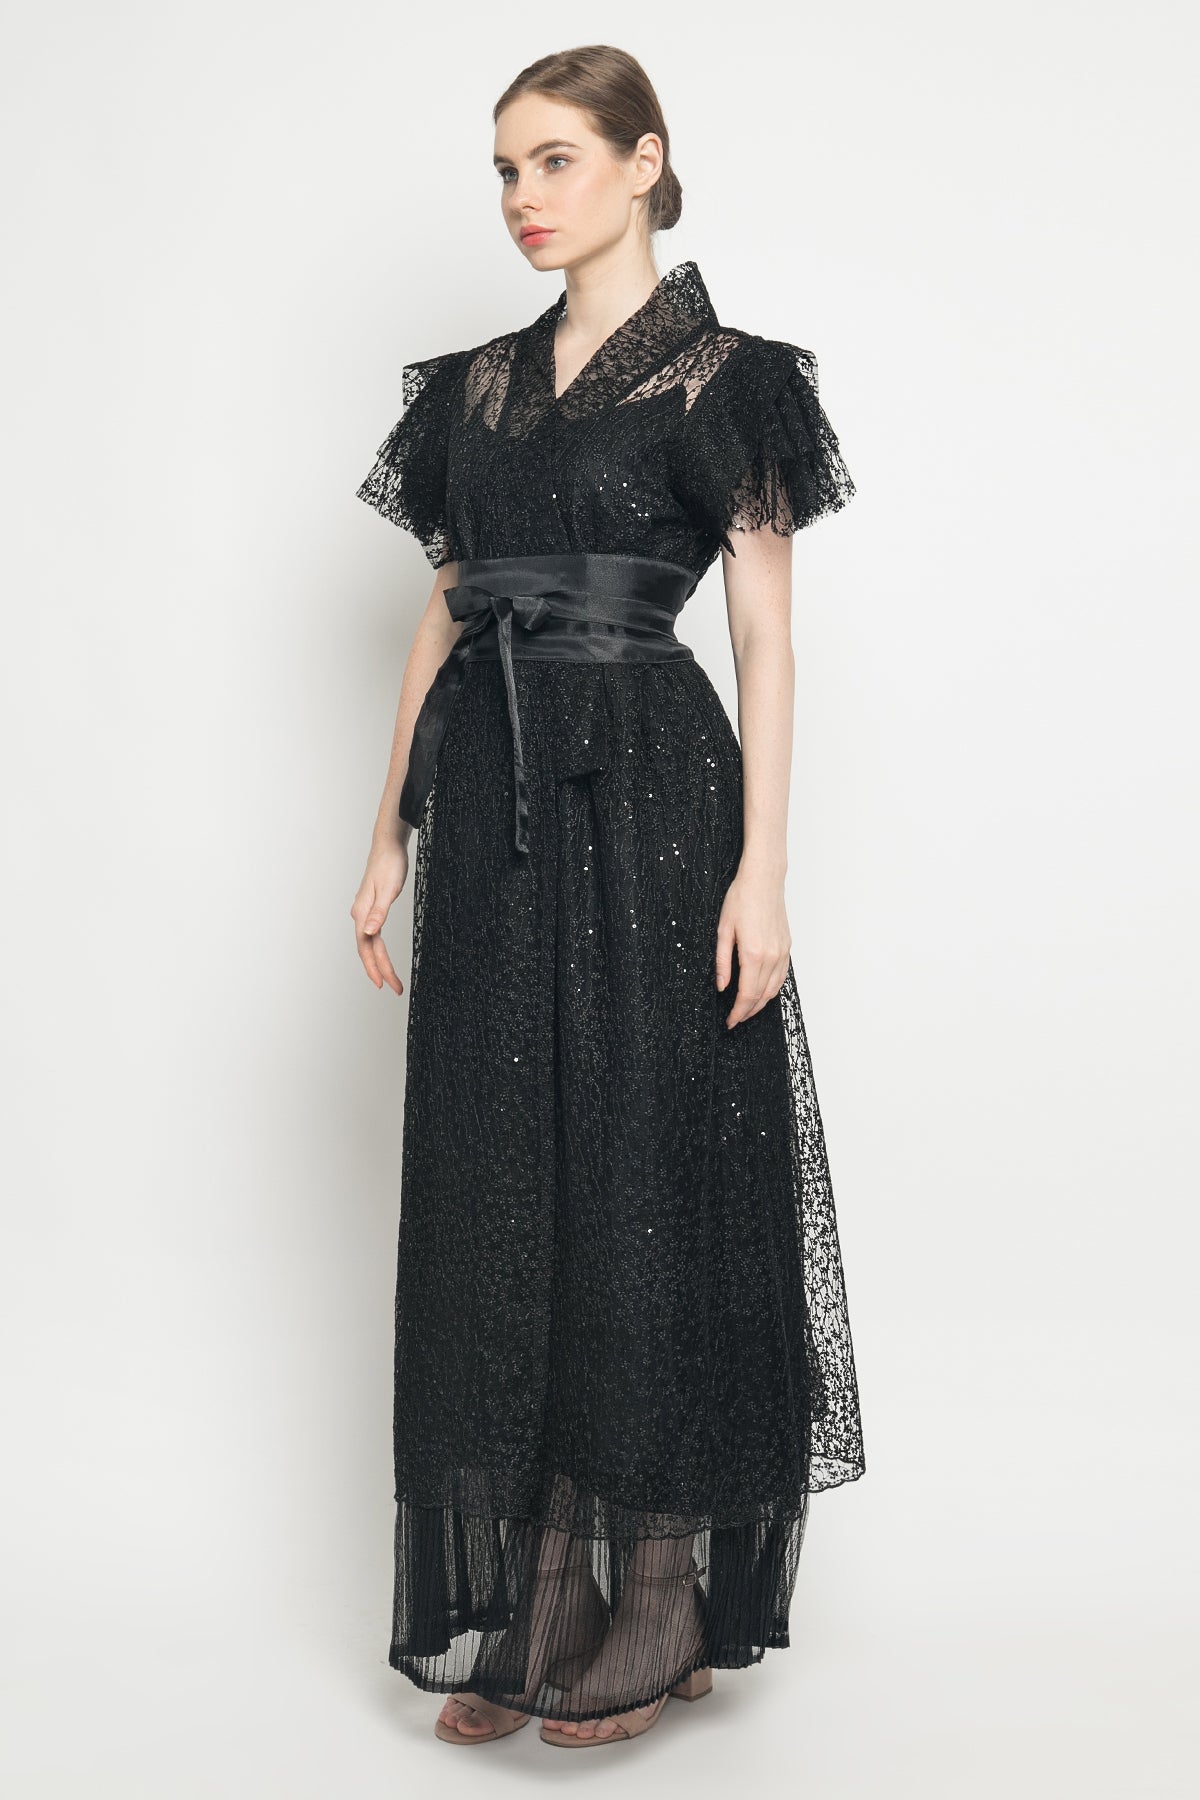 Naoki Obi Dress in Black